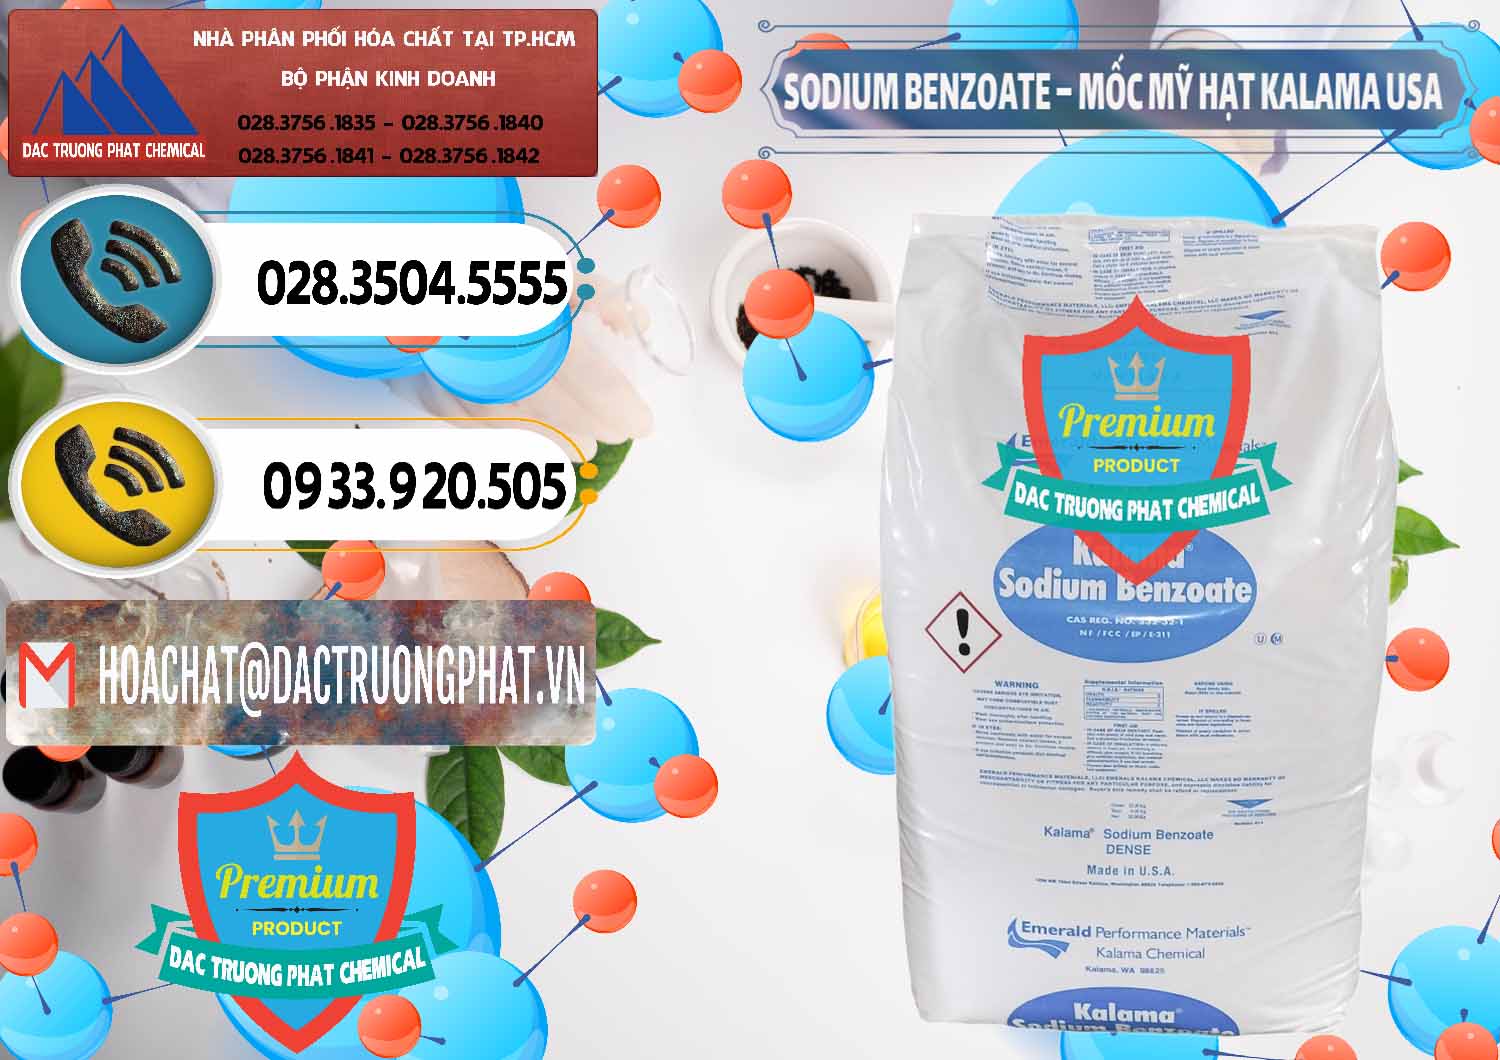 Kinh doanh và bán Sodium Benzoate - Mốc Hạt Kalama Food Grade Mỹ Usa - 0137 - Cty chuyên cung cấp & kinh doanh hóa chất tại TP.HCM - hoachatdetnhuom.vn